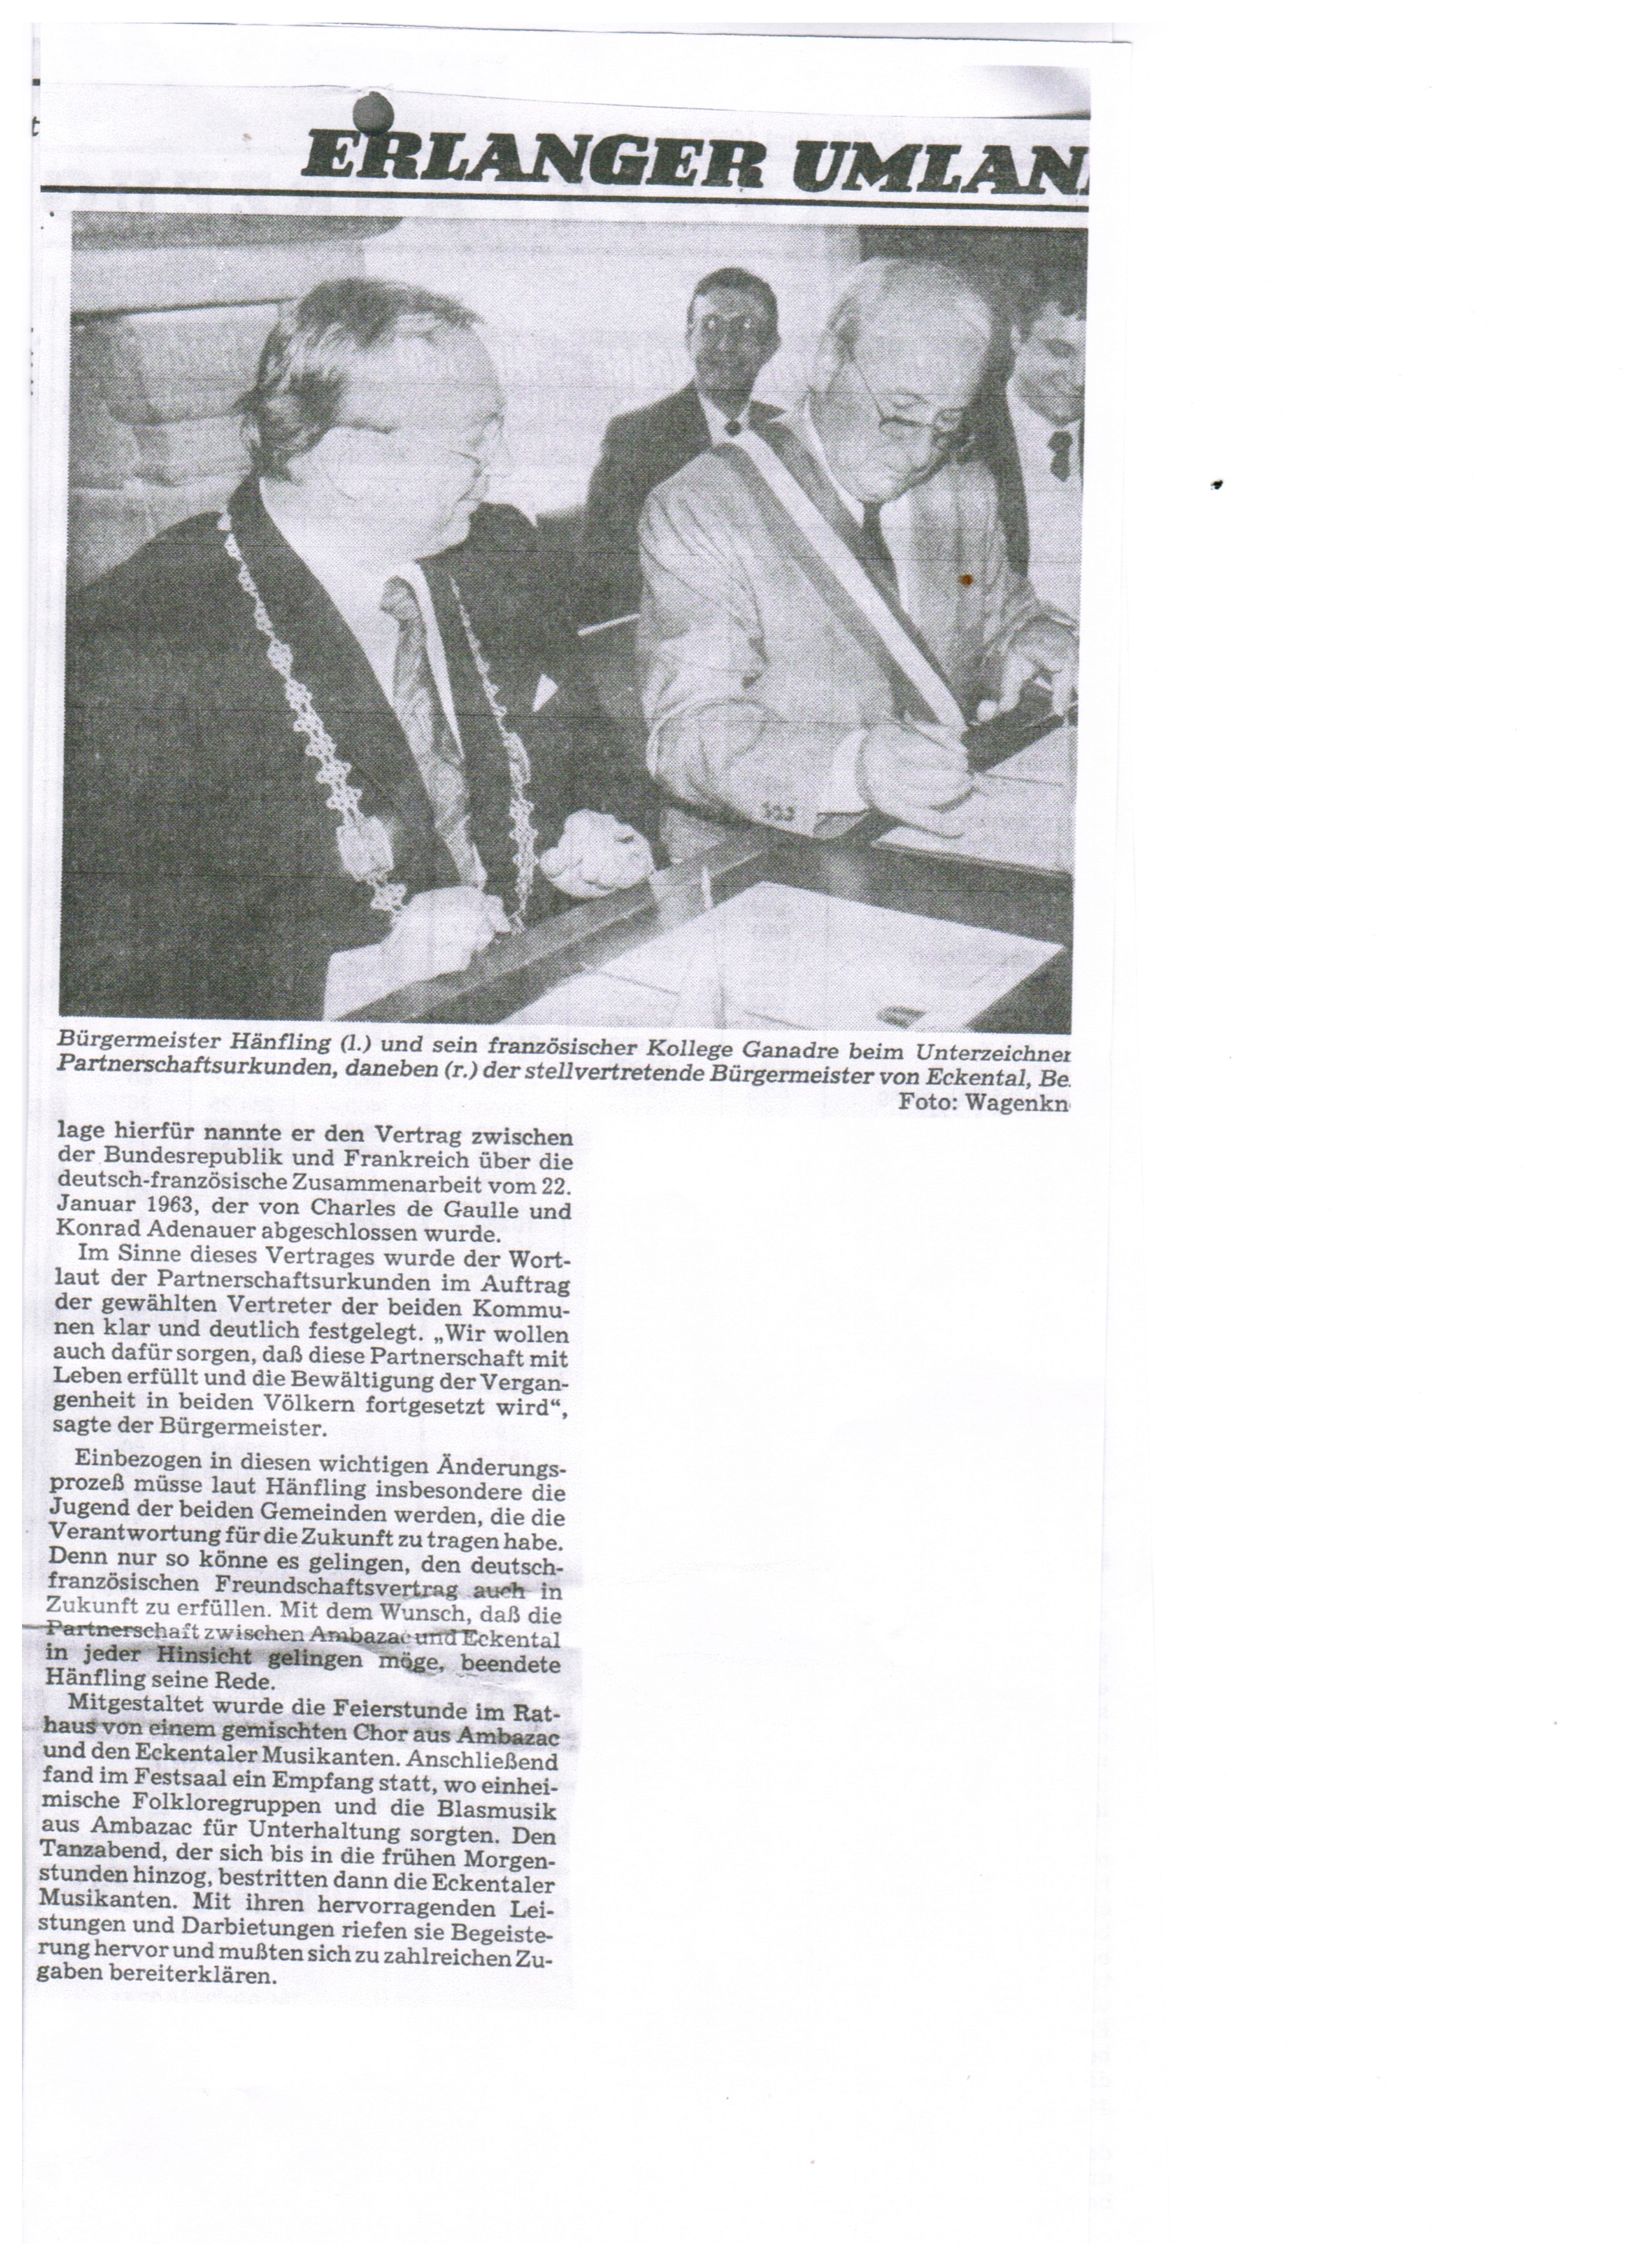 1997 Pressemitteilung 2